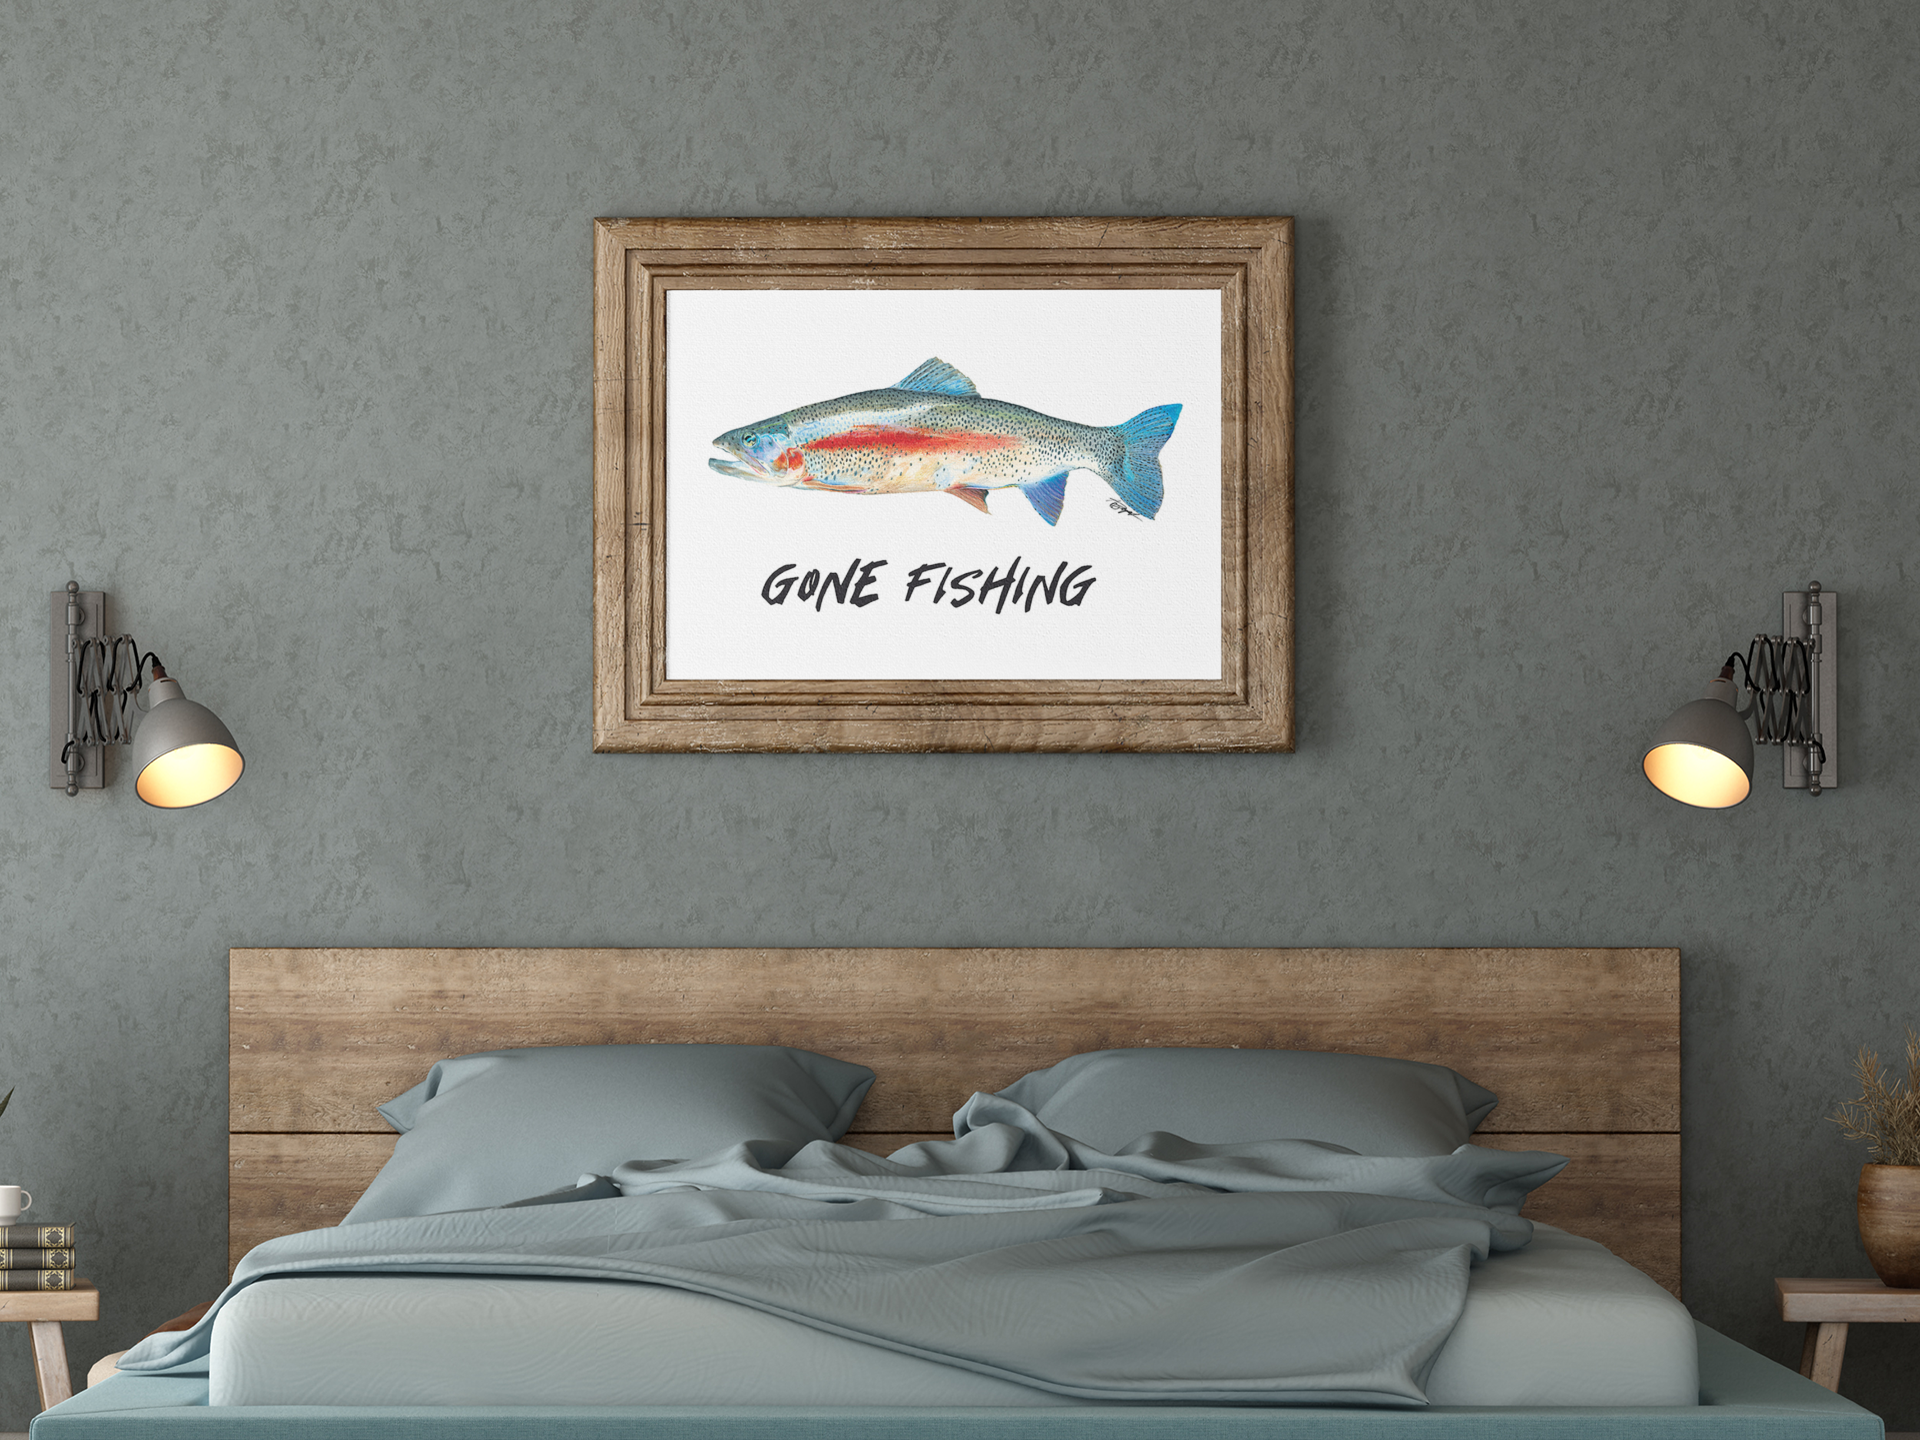 Gone Fishing Decor, Stunning New Art, Fishing Art, 9x11